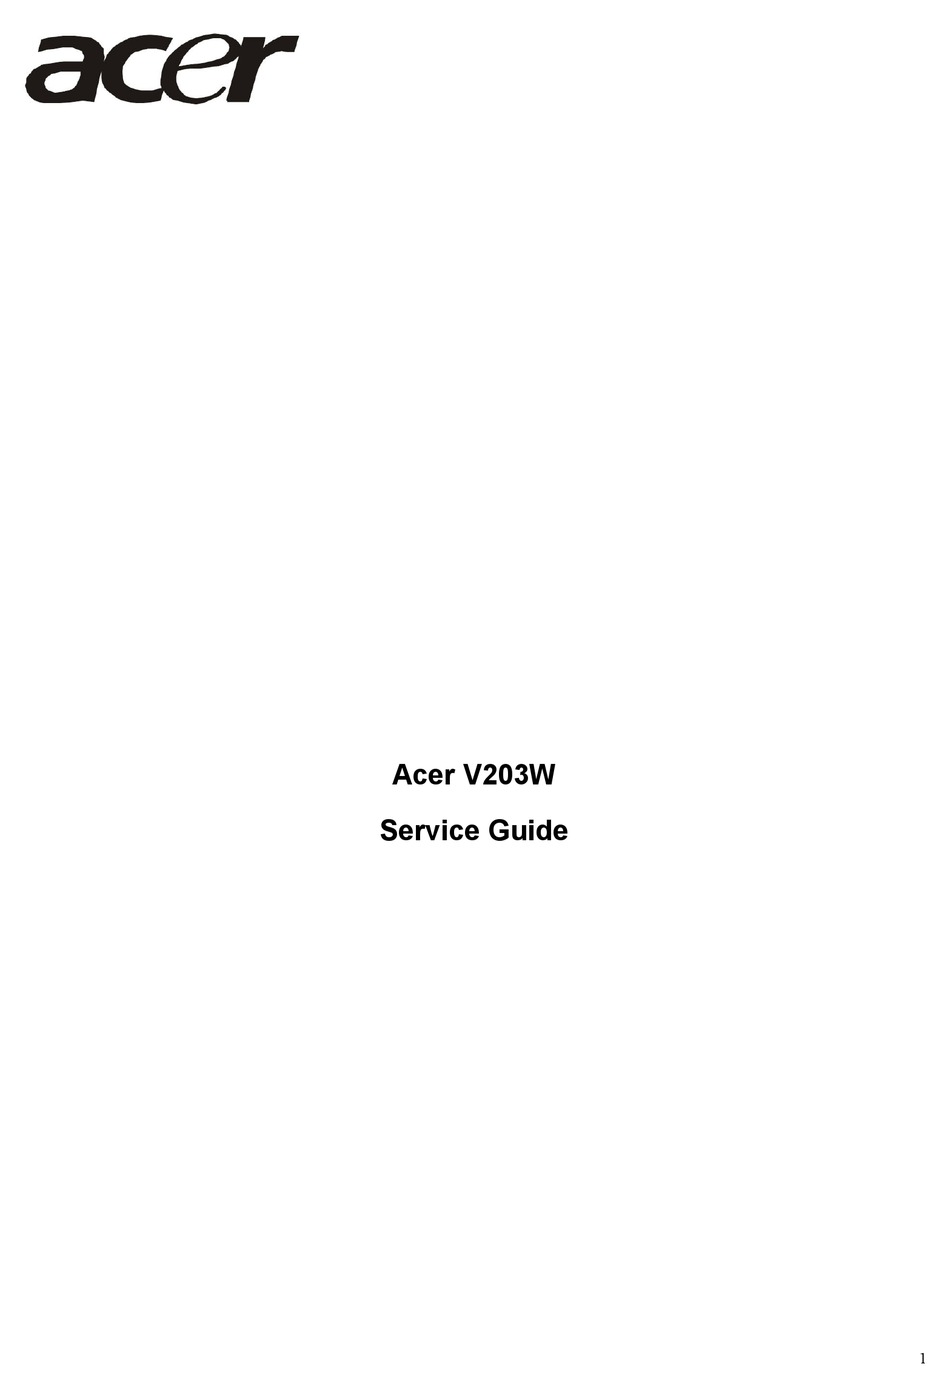 ACER V203W SERVICE MANUAL Pdf Download | ManualsLib